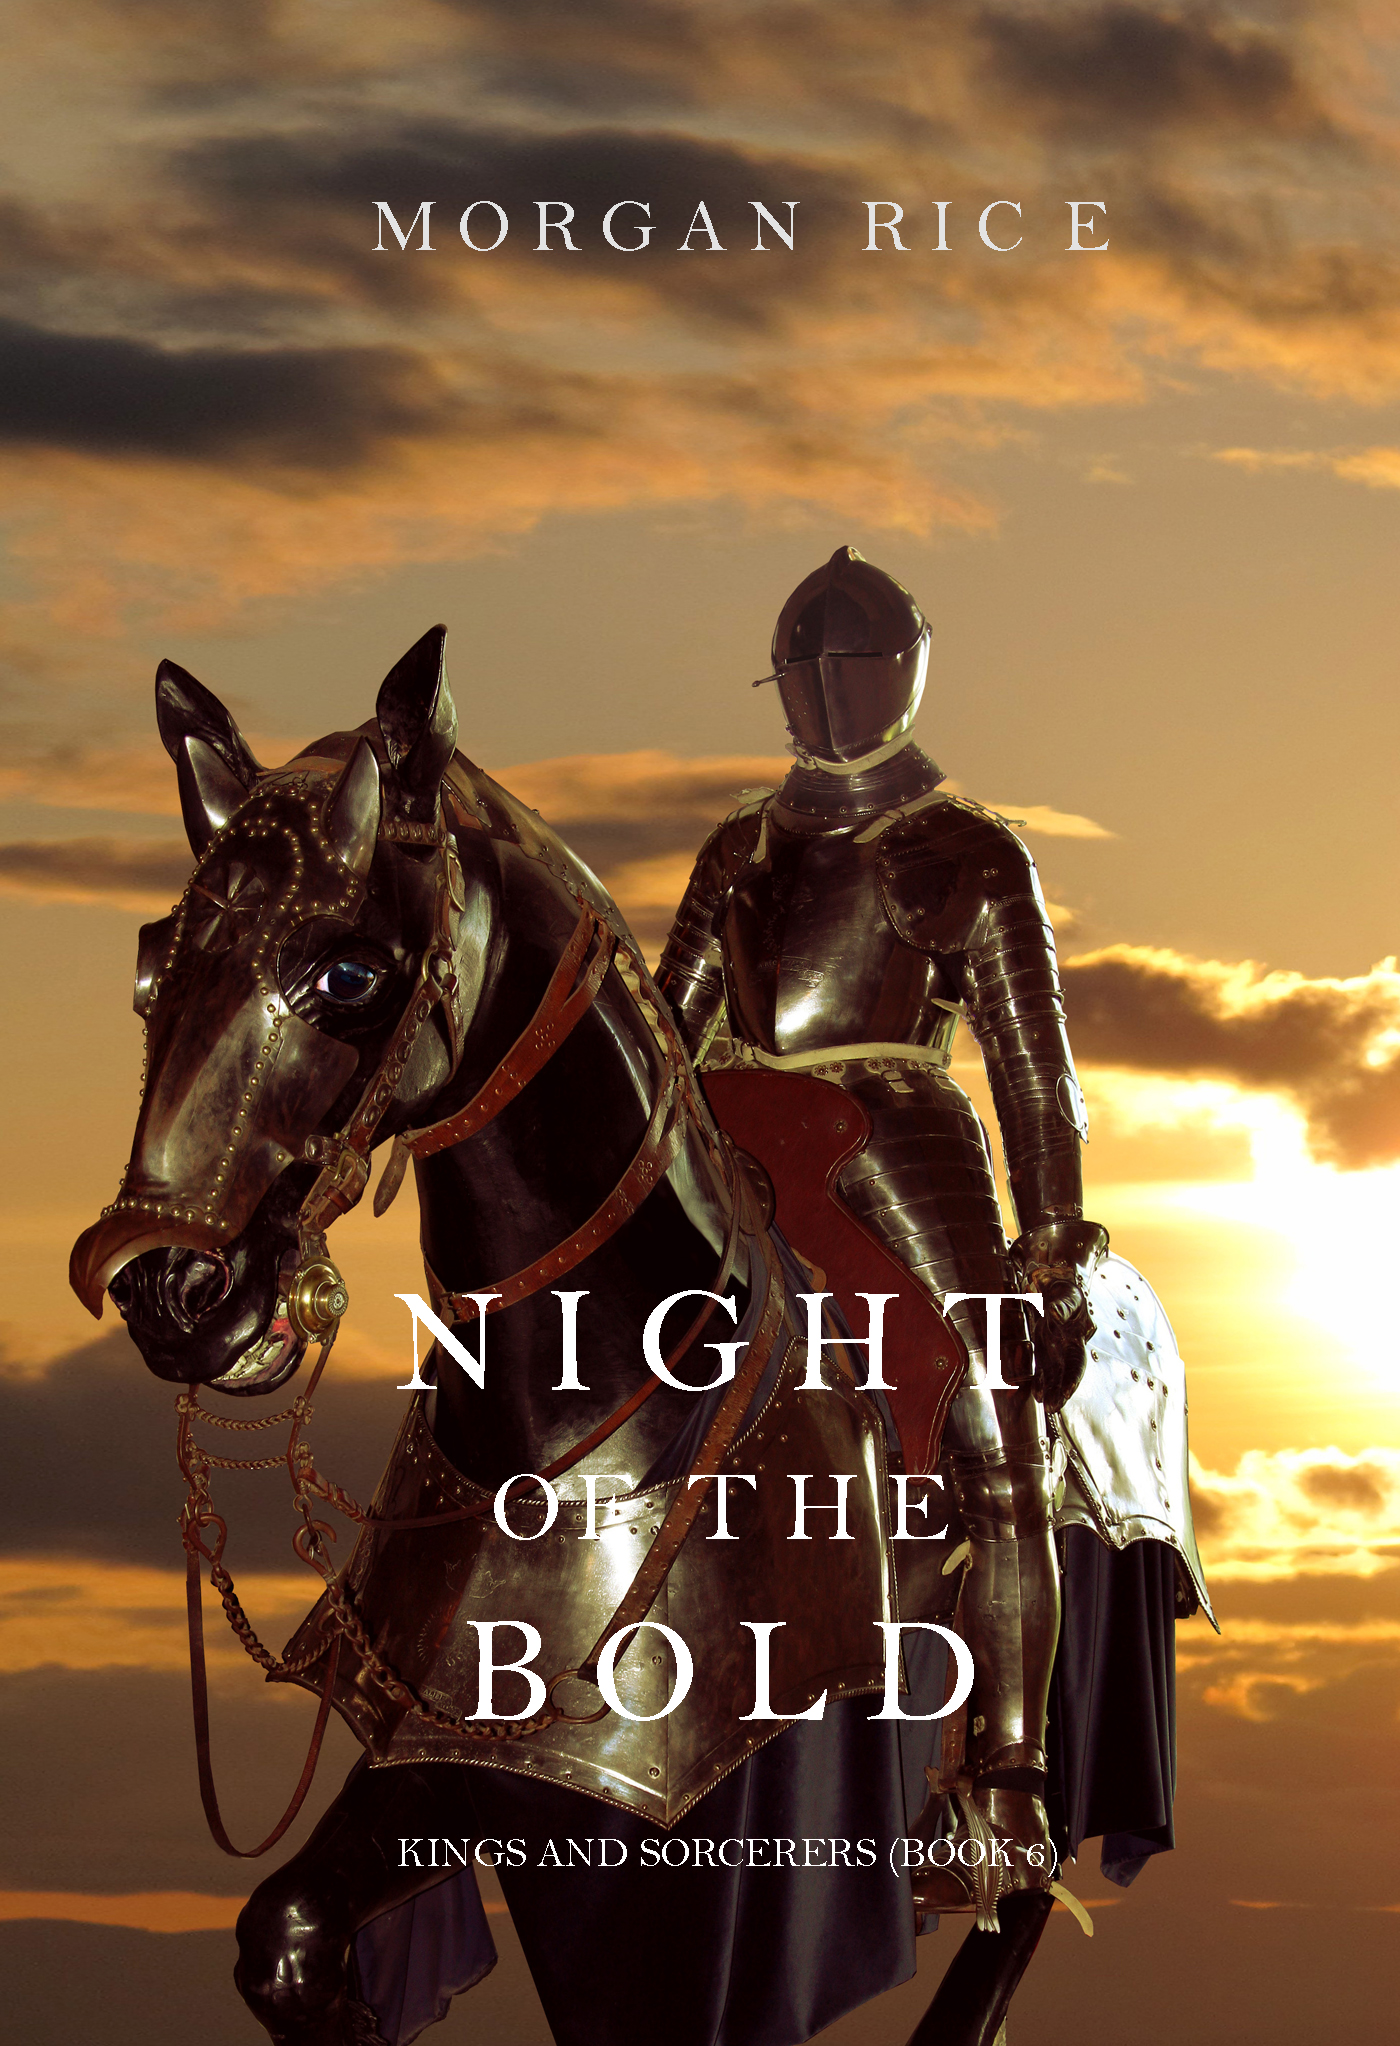 Книга Night of the Bold из серии , созданная Morgan Rice, может относится к жанру Иностранные языки, Героическая фантастика, Боевое фэнтези, Фэнтези про драконов, Зарубежное фэнтези. Стоимость электронной книги Night of the Bold с идентификатором 18173006 составляет 199.00 руб.